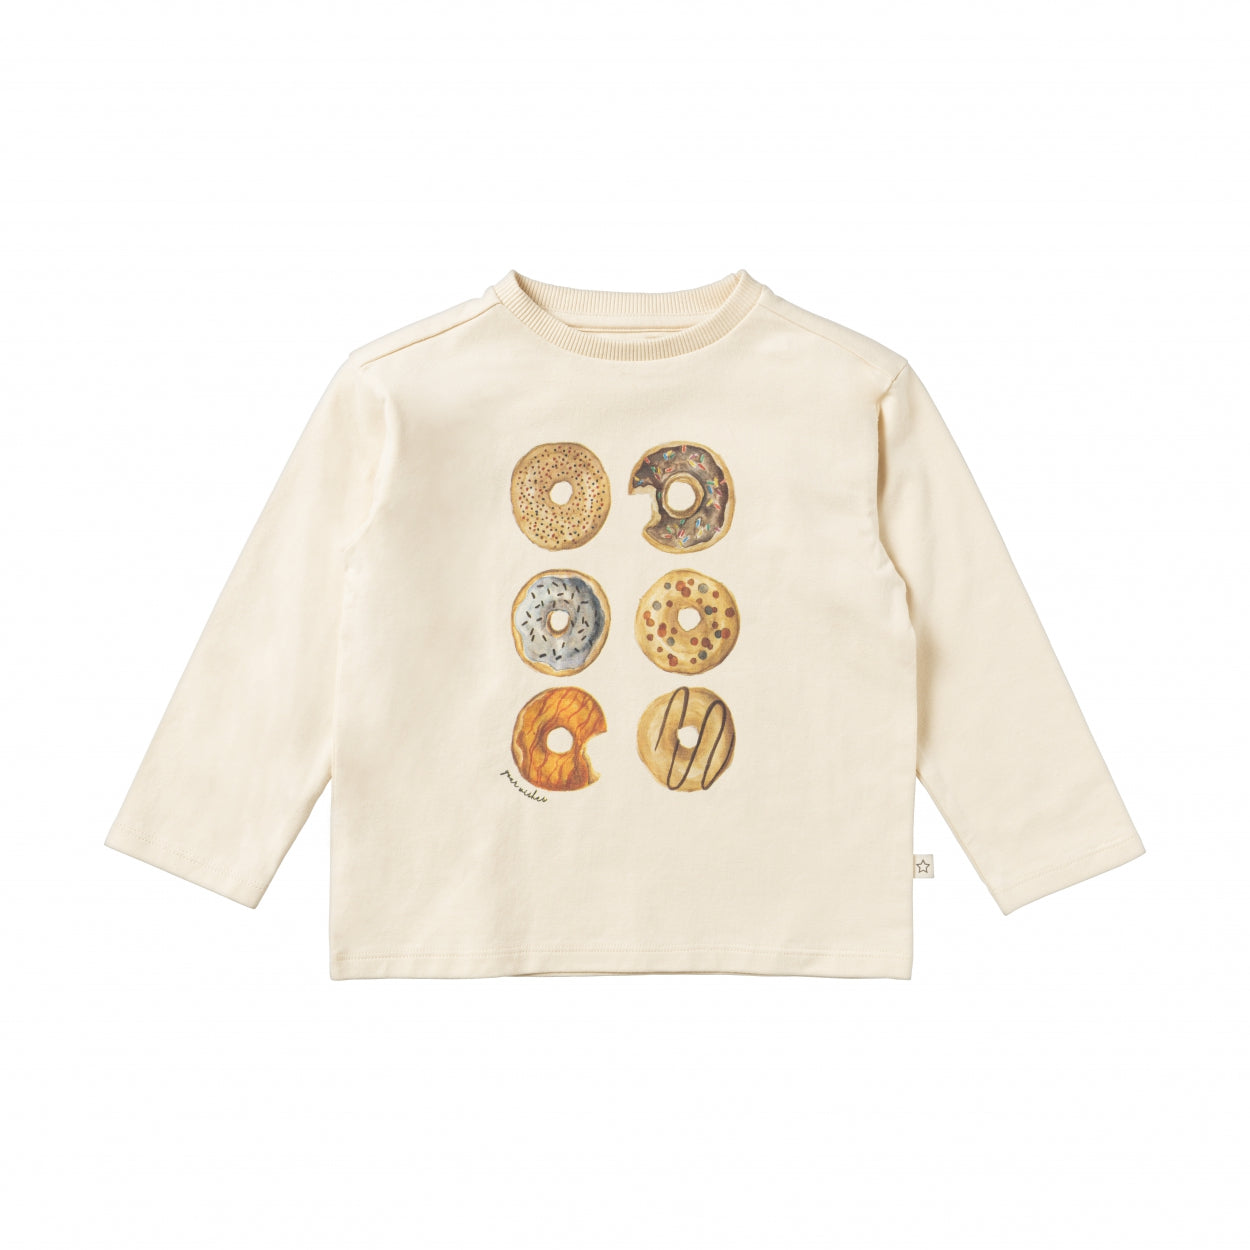 Jongens Shirt Donut | Mees van Your Wishes in de kleur Honeycomb in maat 98.